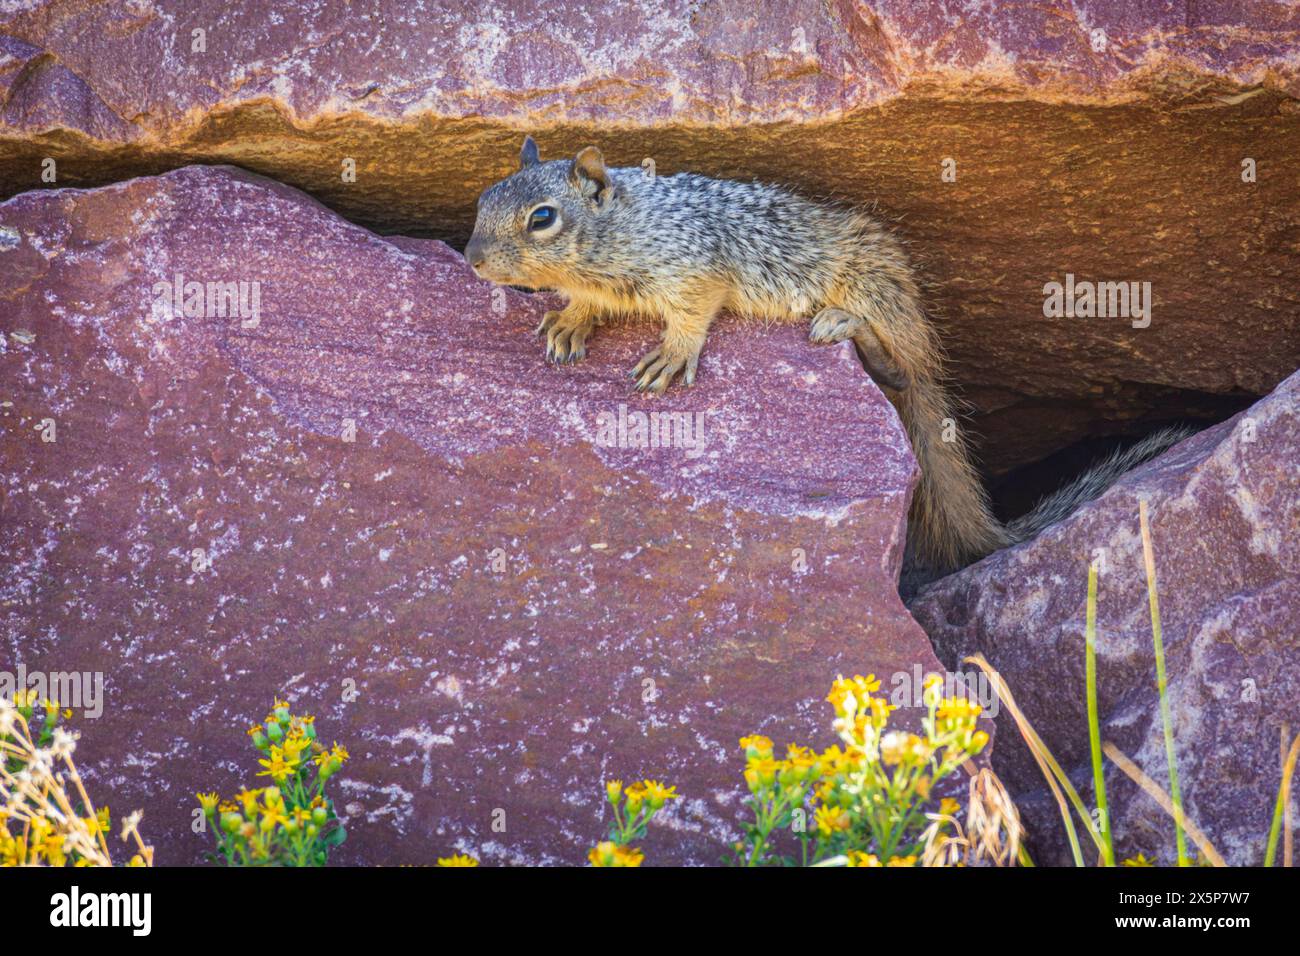 Jeune écureuil rocheux (Otospermophilus variegatus), anciennement (Citellus variegatus), reposant sur un rocher rocheux, région de Castle Rock dans le Colorado aux États-Unis. Banque D'Images